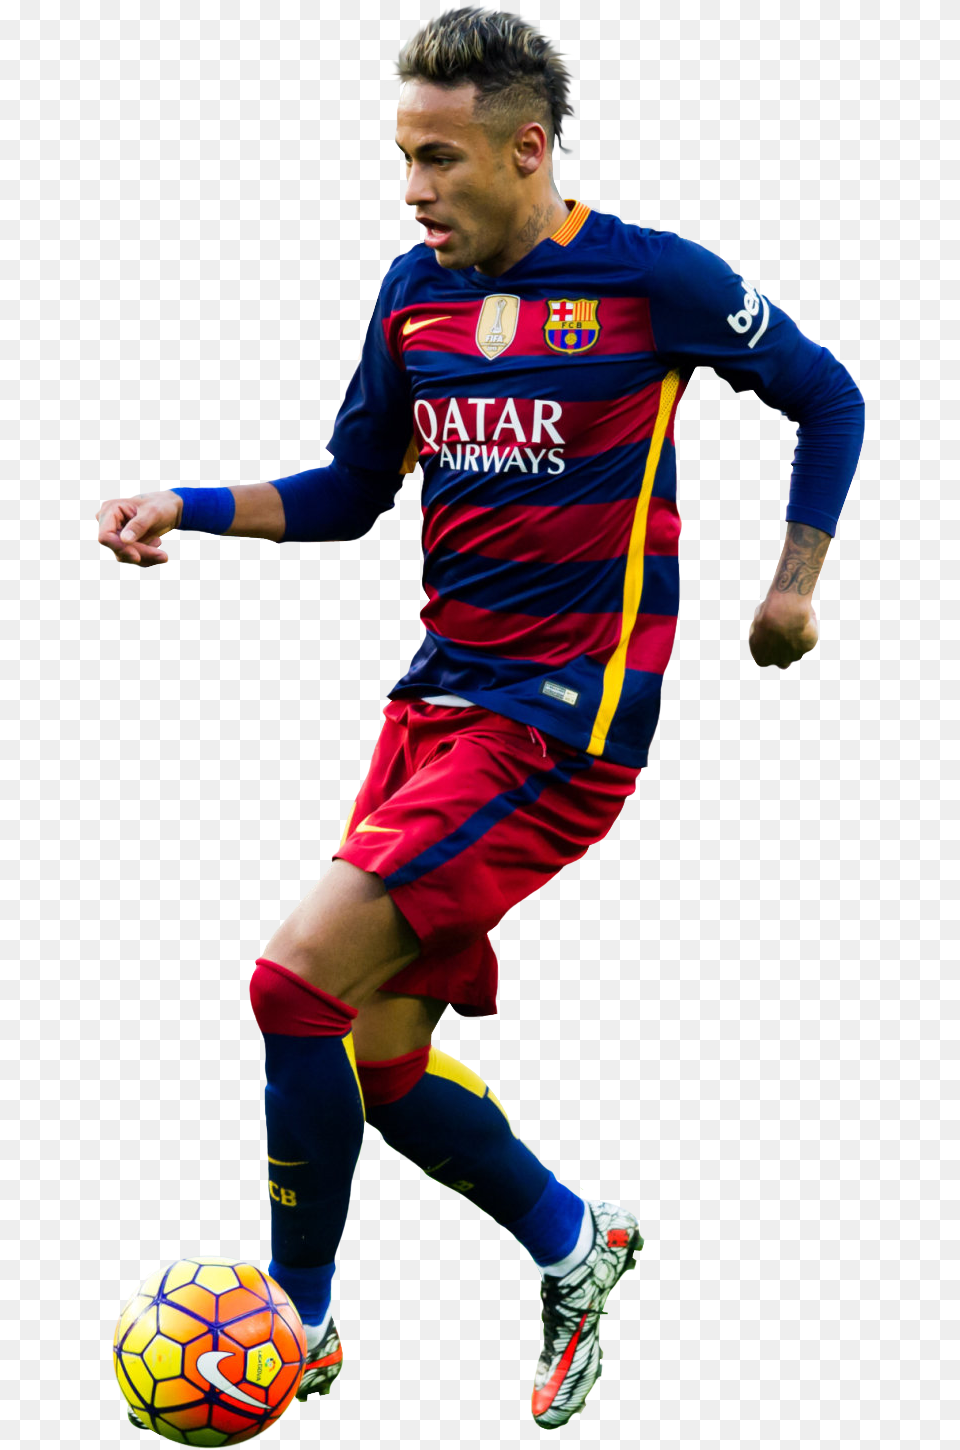 Neymar Football Render Neymar Barcelona 2016 Render, Ball, Sport, Sphere, Soccer Ball Png Image